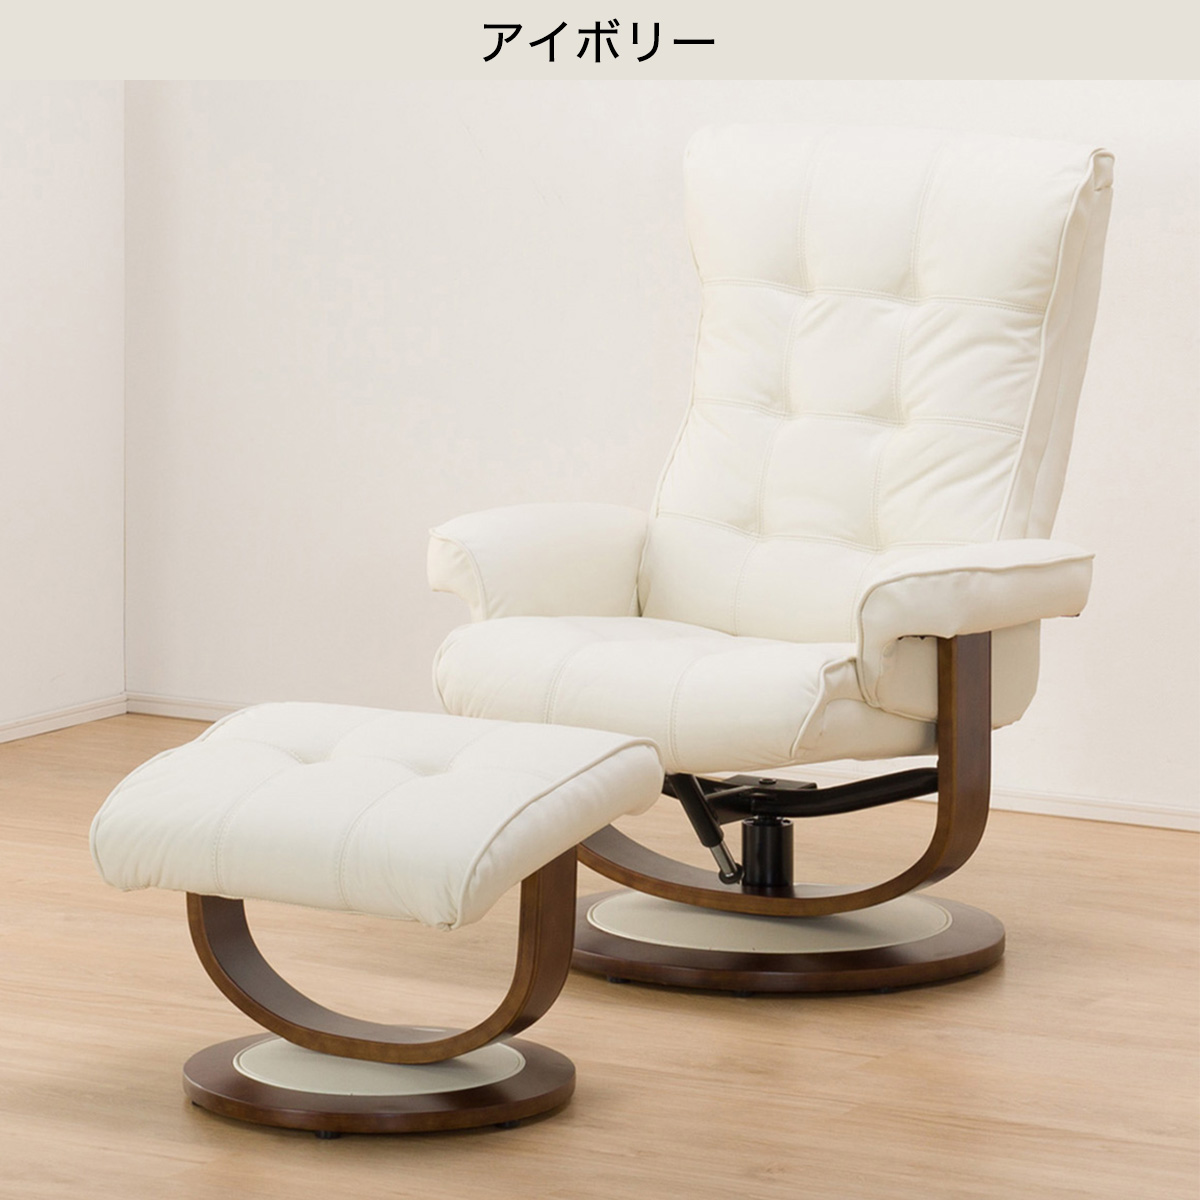 Nitori Personal Chair Primo 2 ホンガワ Nitori Of Grain Leather